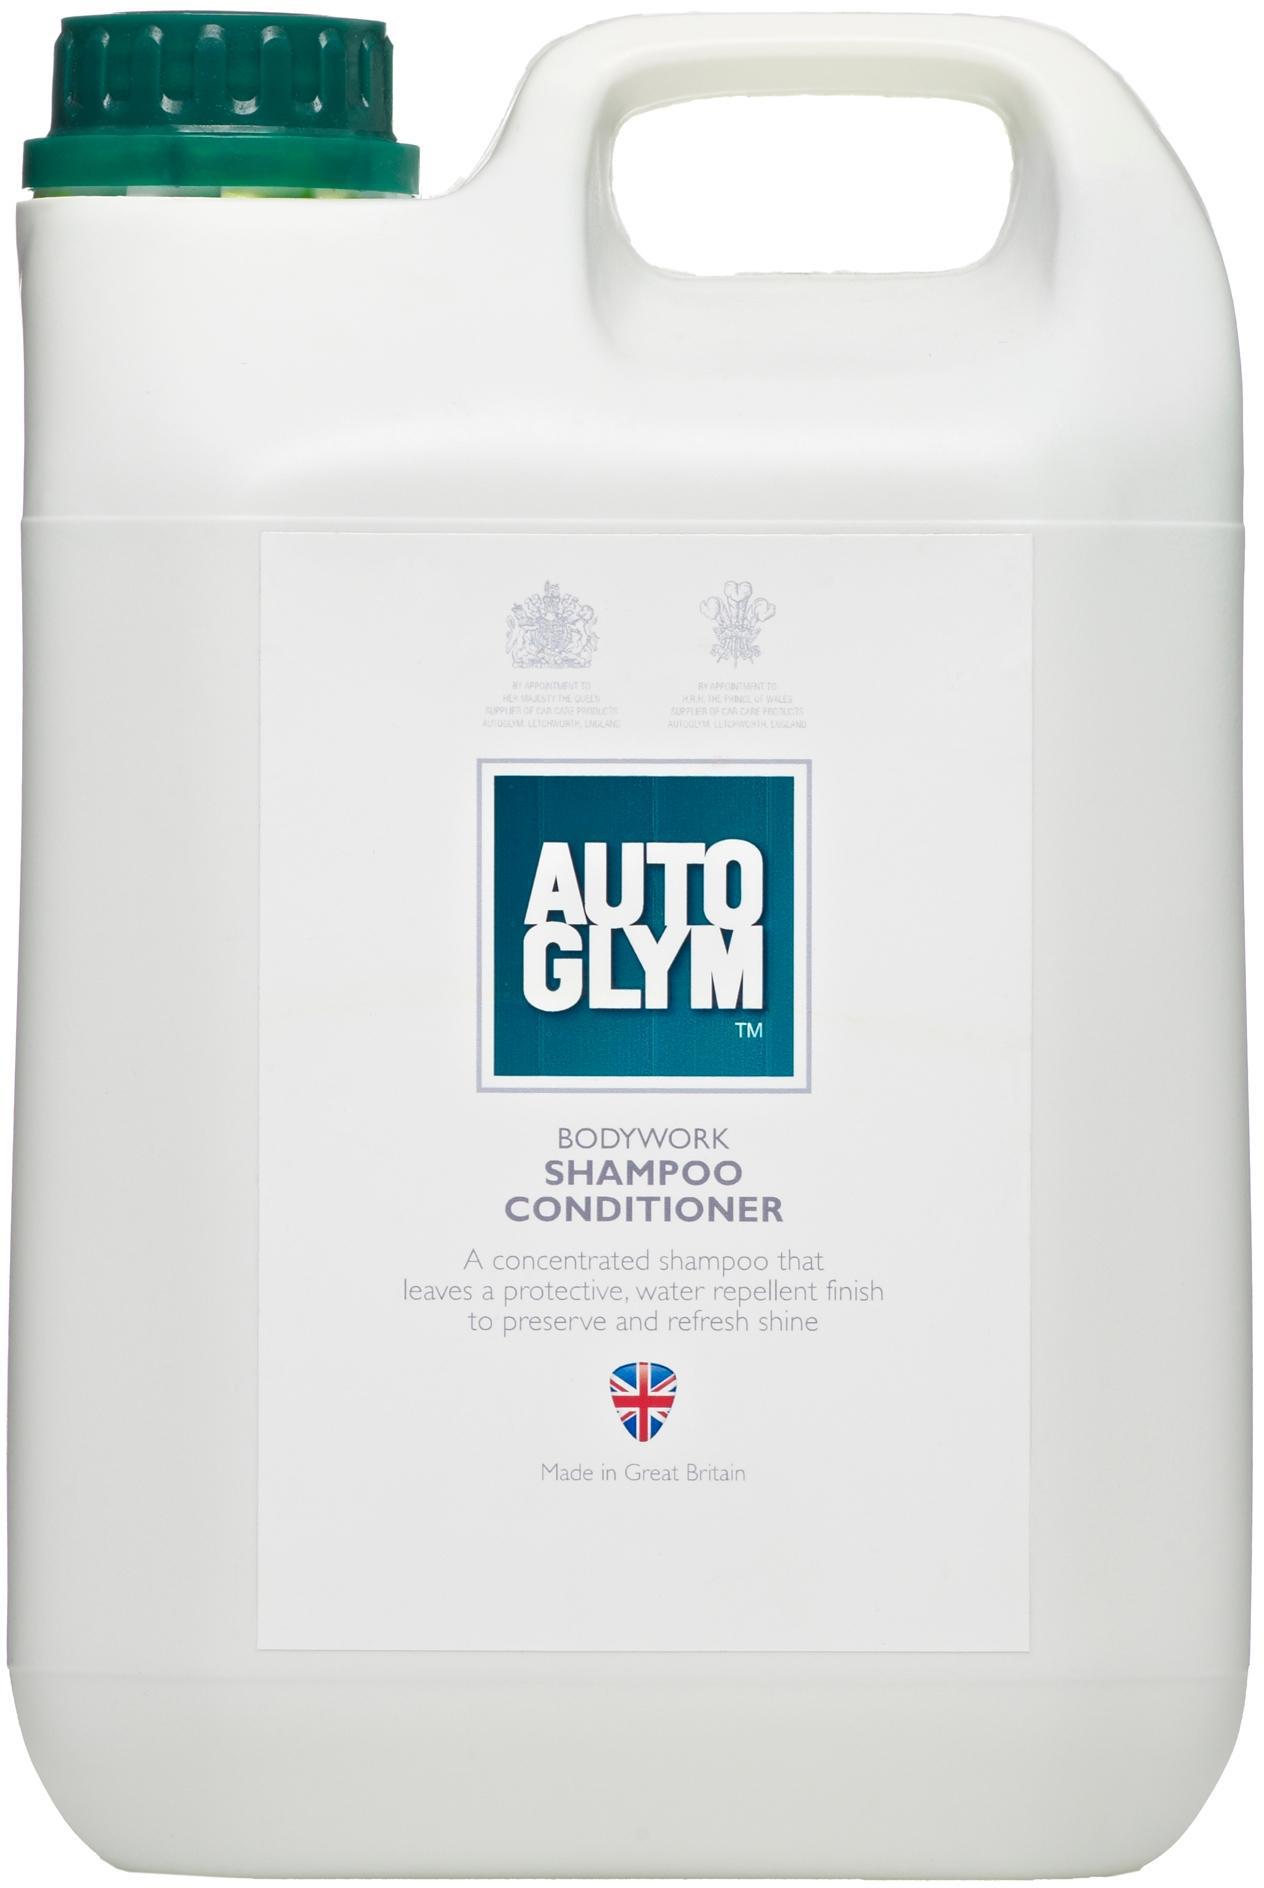 Autoglym Bodywork Shampoo Conditioner 2.5 Litre